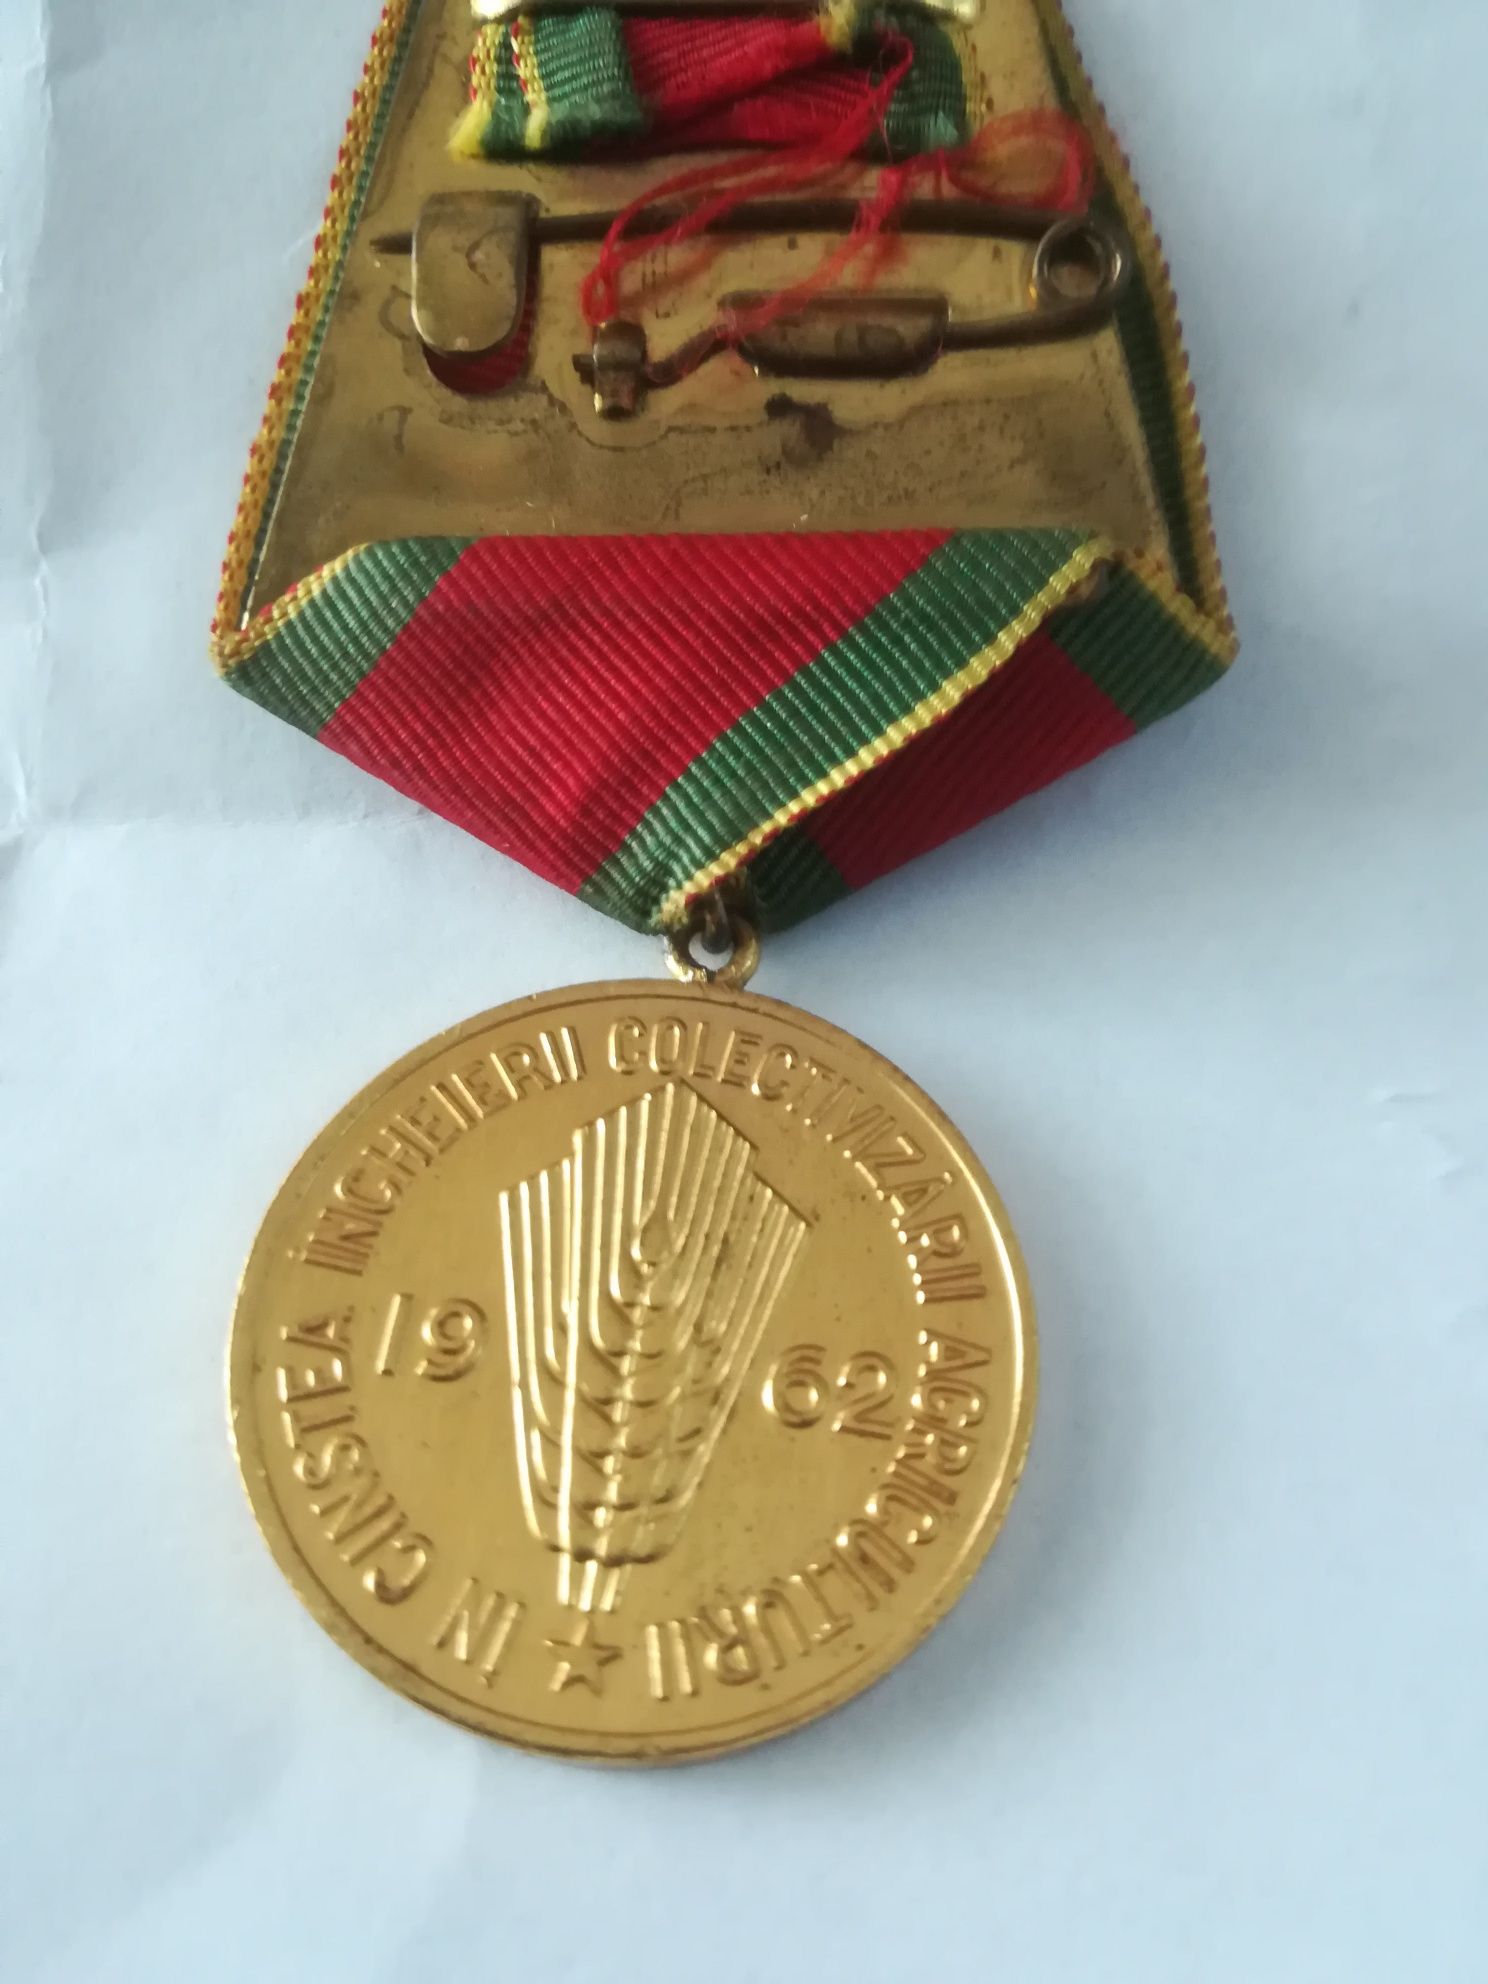 Medalie în cinstea incheierii colectivizarii1962